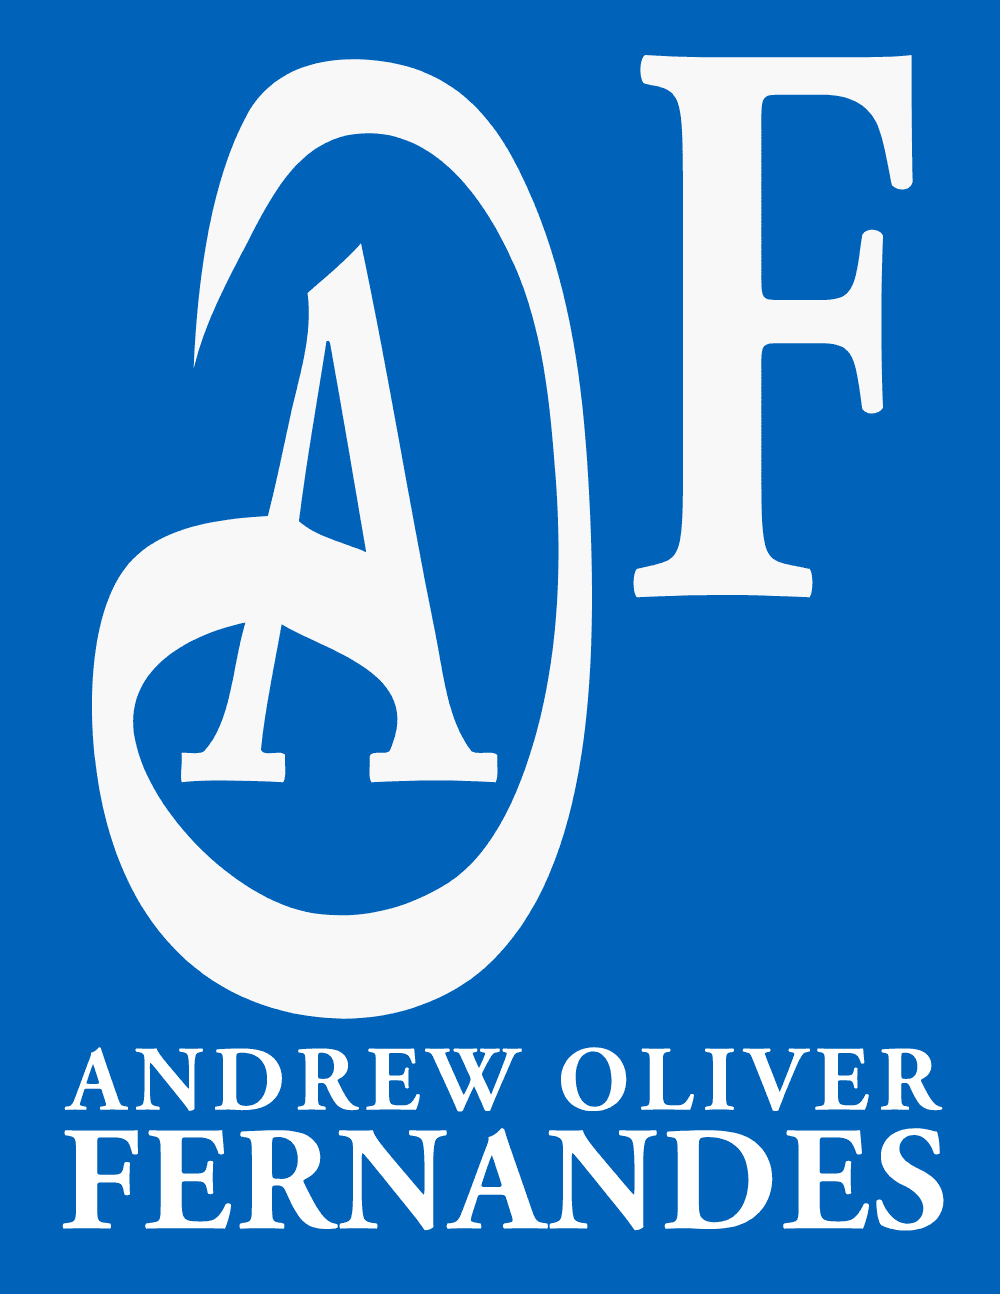 Andrew Oliver Fernandes Logo download